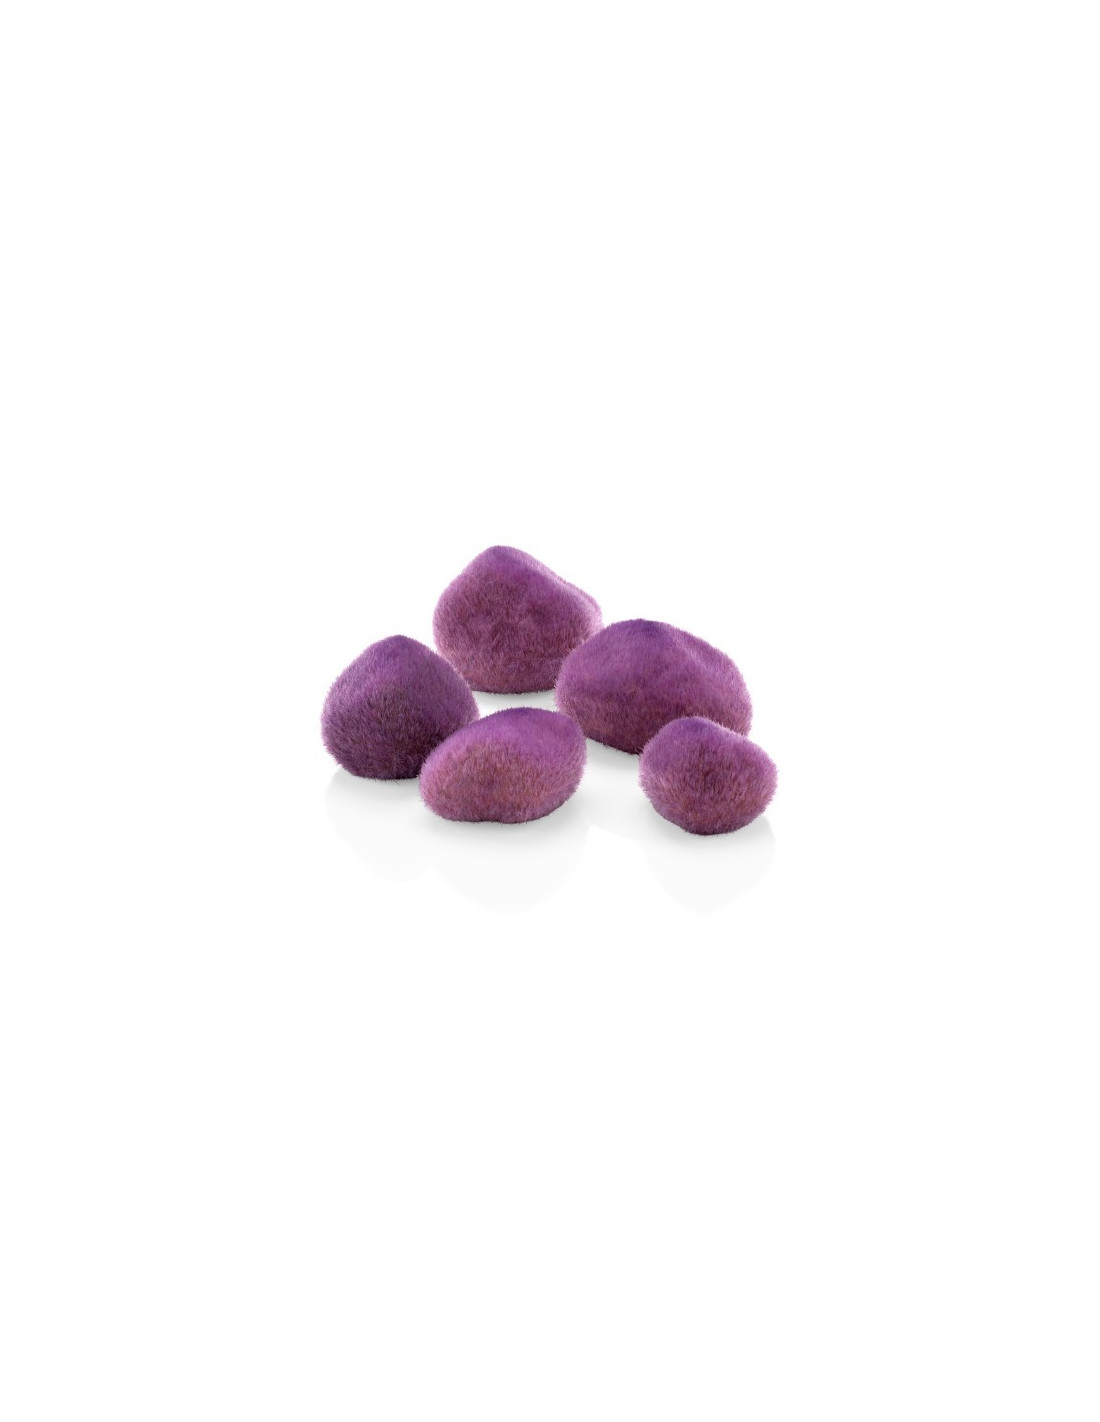 Cailloux Violets BiOrb